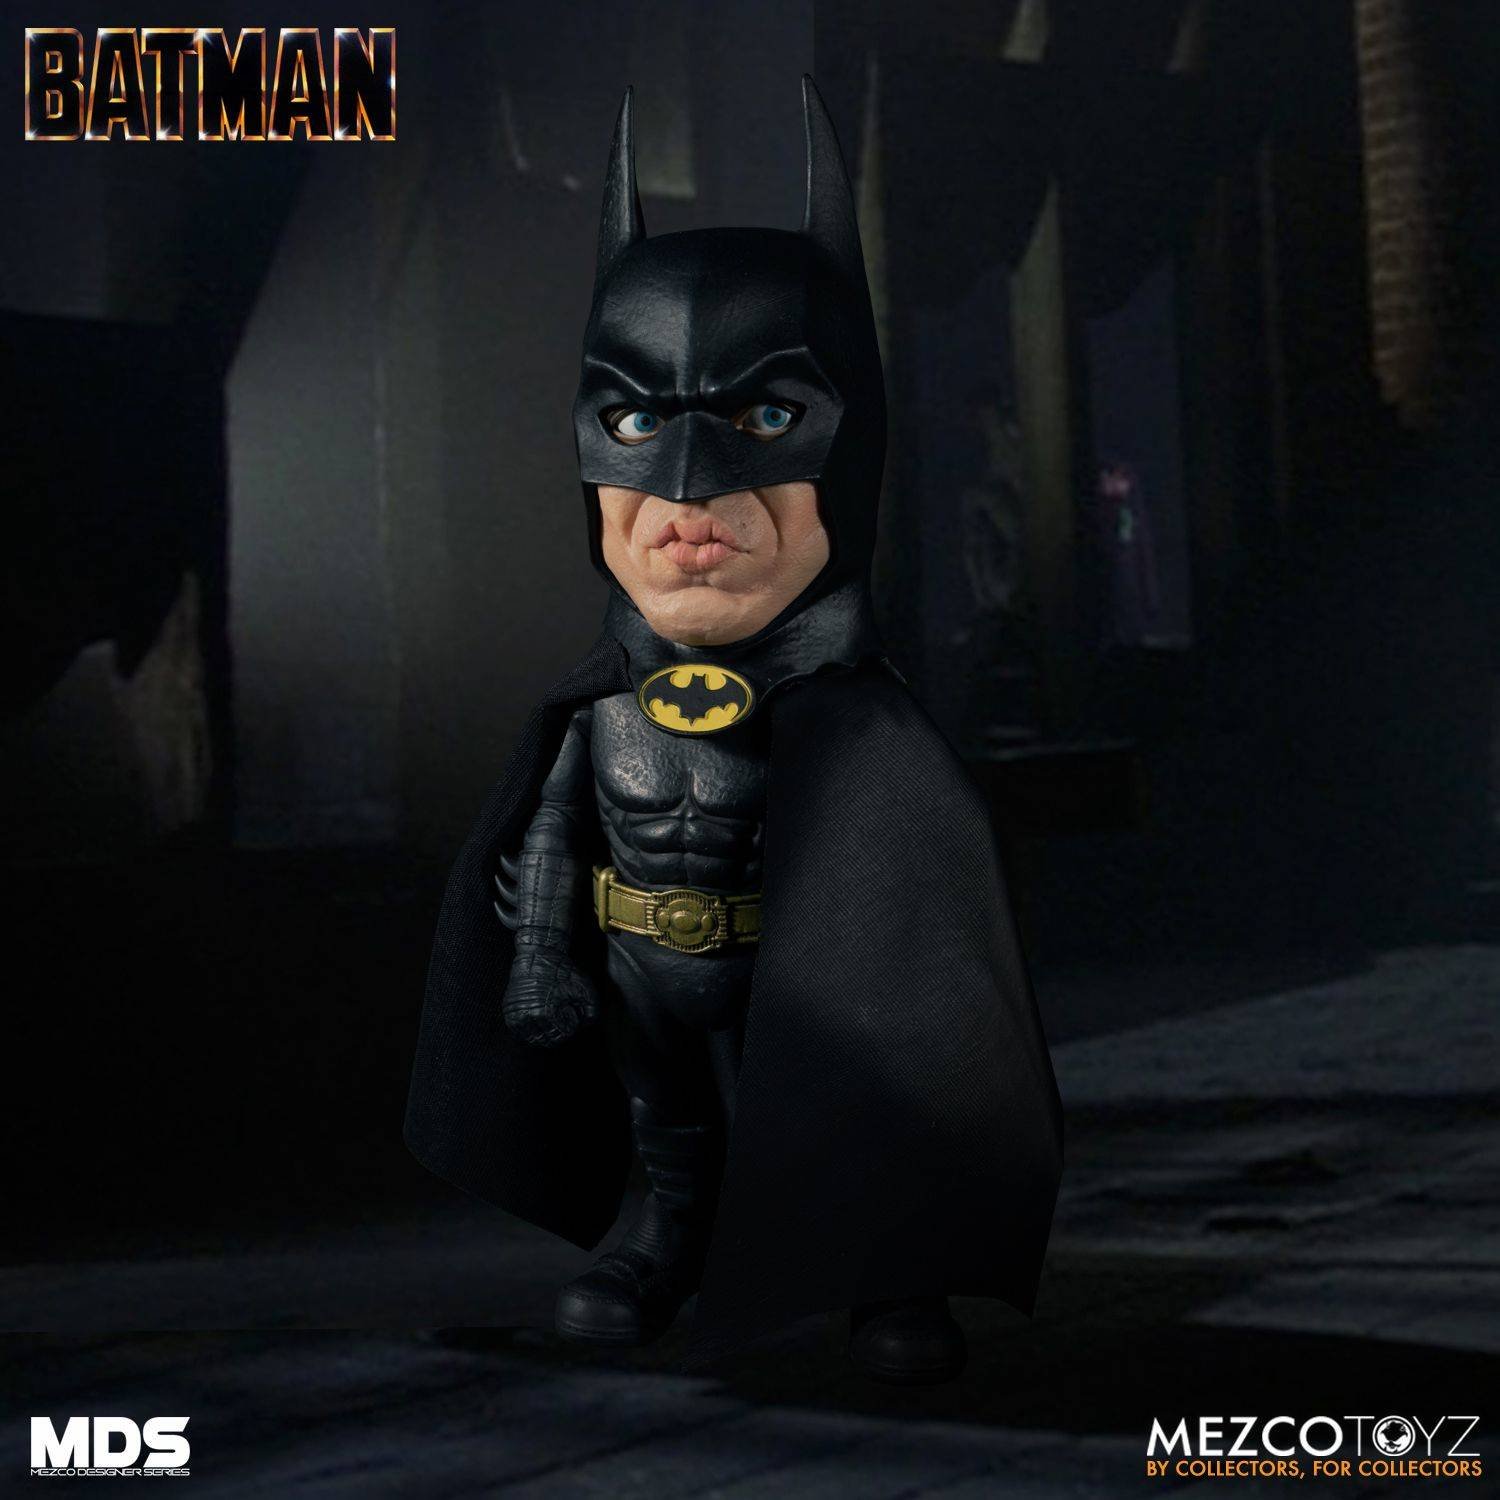 Immagine di Batman 89: Mezco presenta la nuova figure deformed